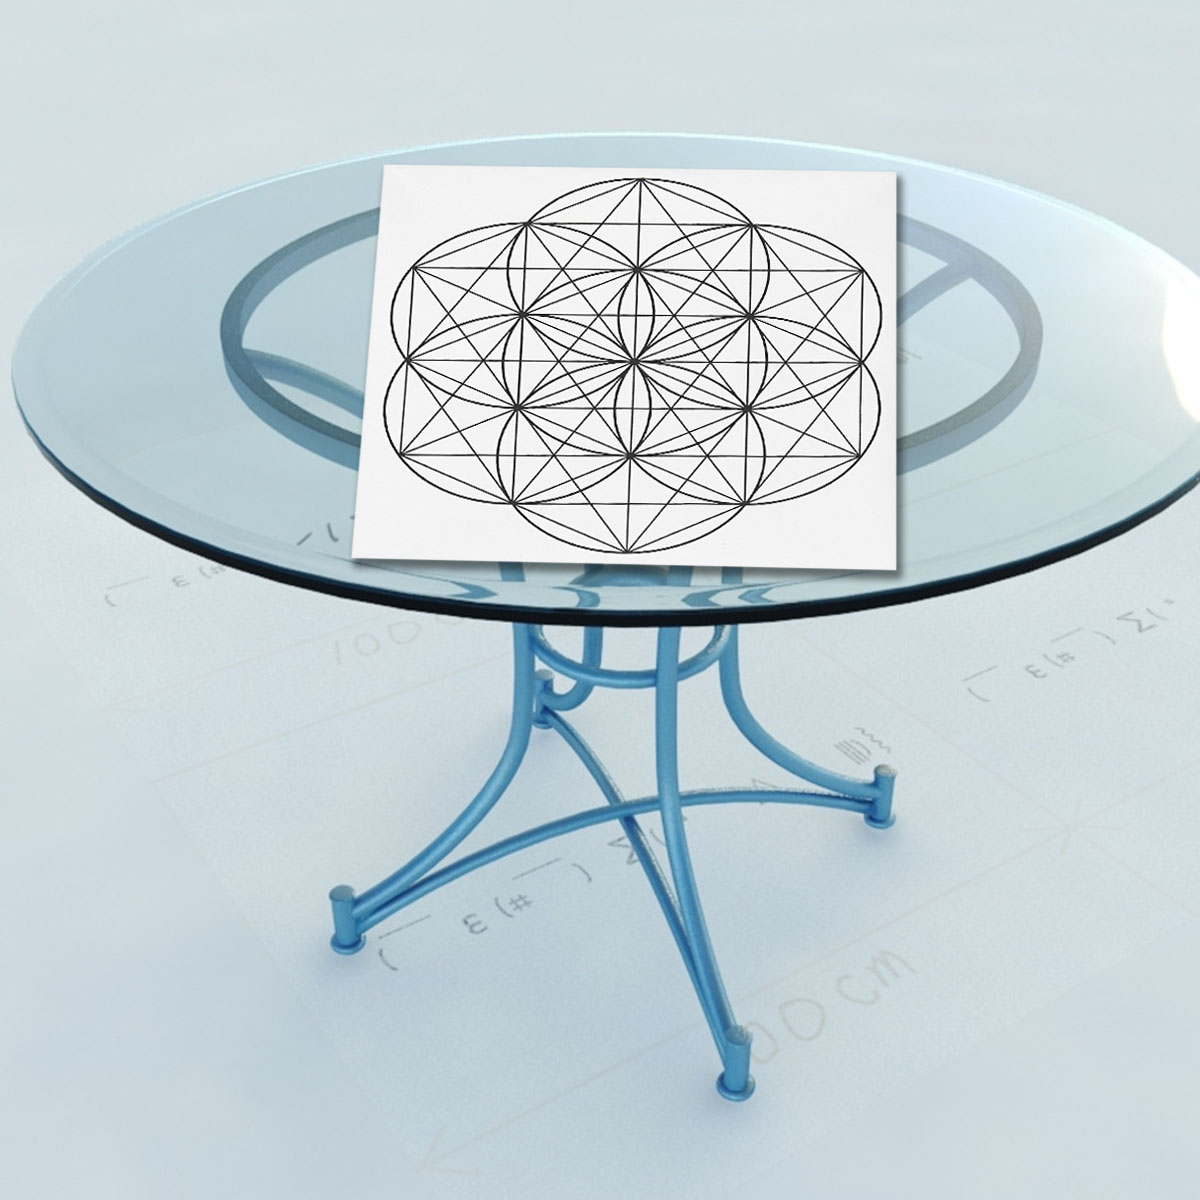 50x50cm flor da vida cristal grade pano geometria sagrada toalha de mesa belas decorações